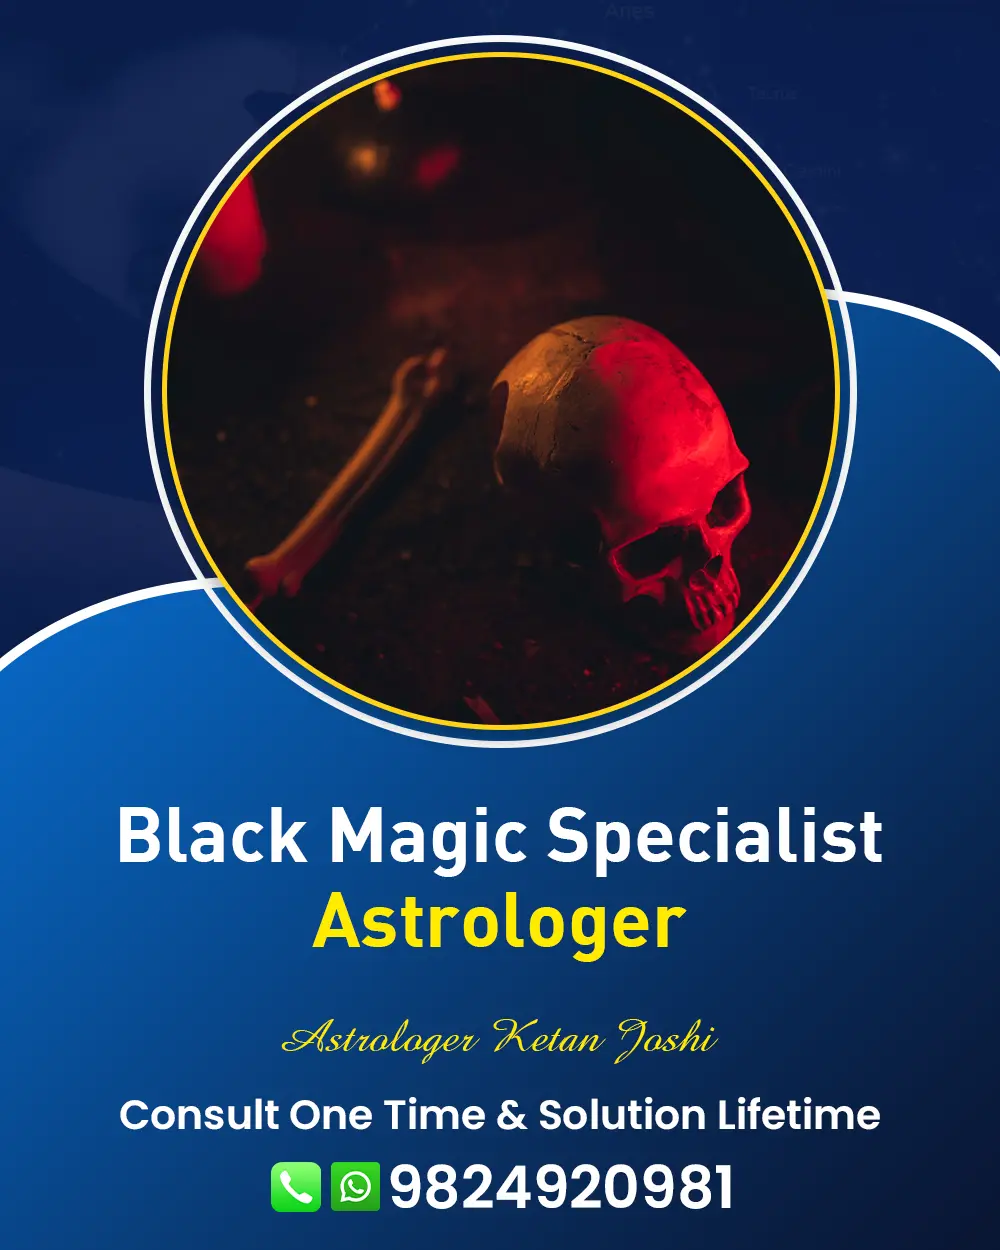 Black Magic Specialist Astrologer in India